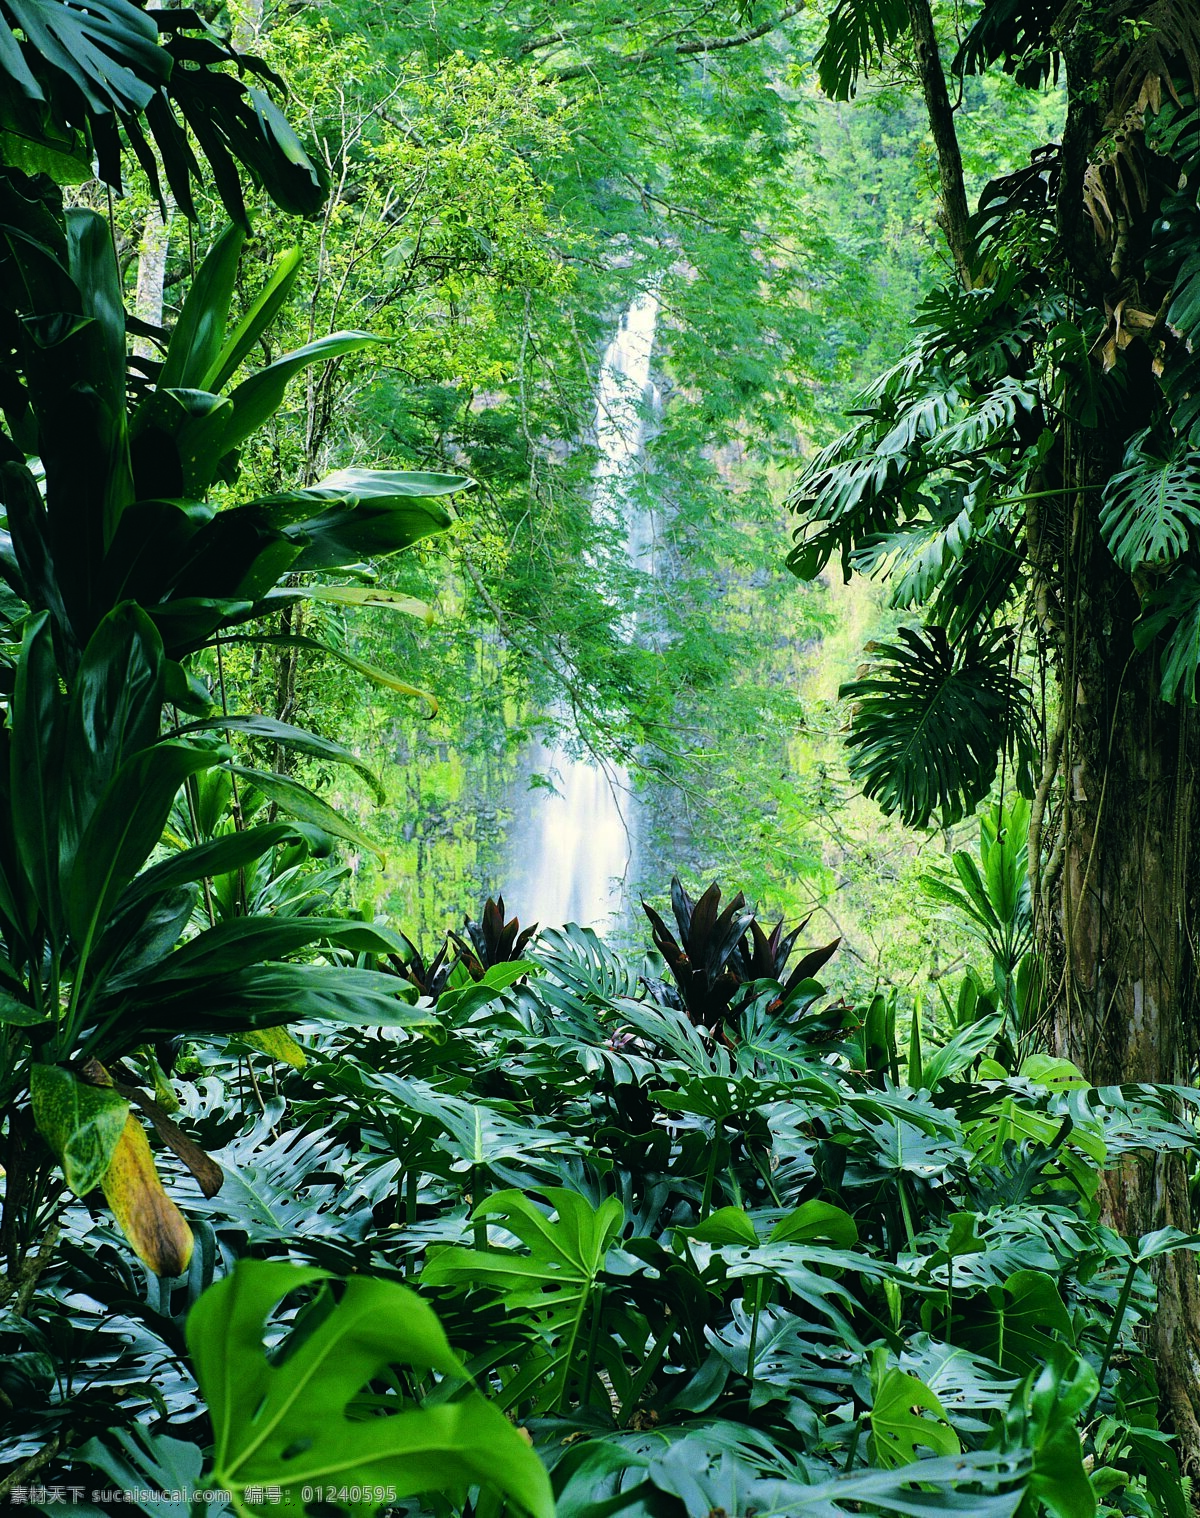 山涧瀑布 瀑布 丛林 原始丛林 热带雨林 藤 大树 影楼背景 喷绘 影楼 背景 自然景观 自然风景 摄影图库